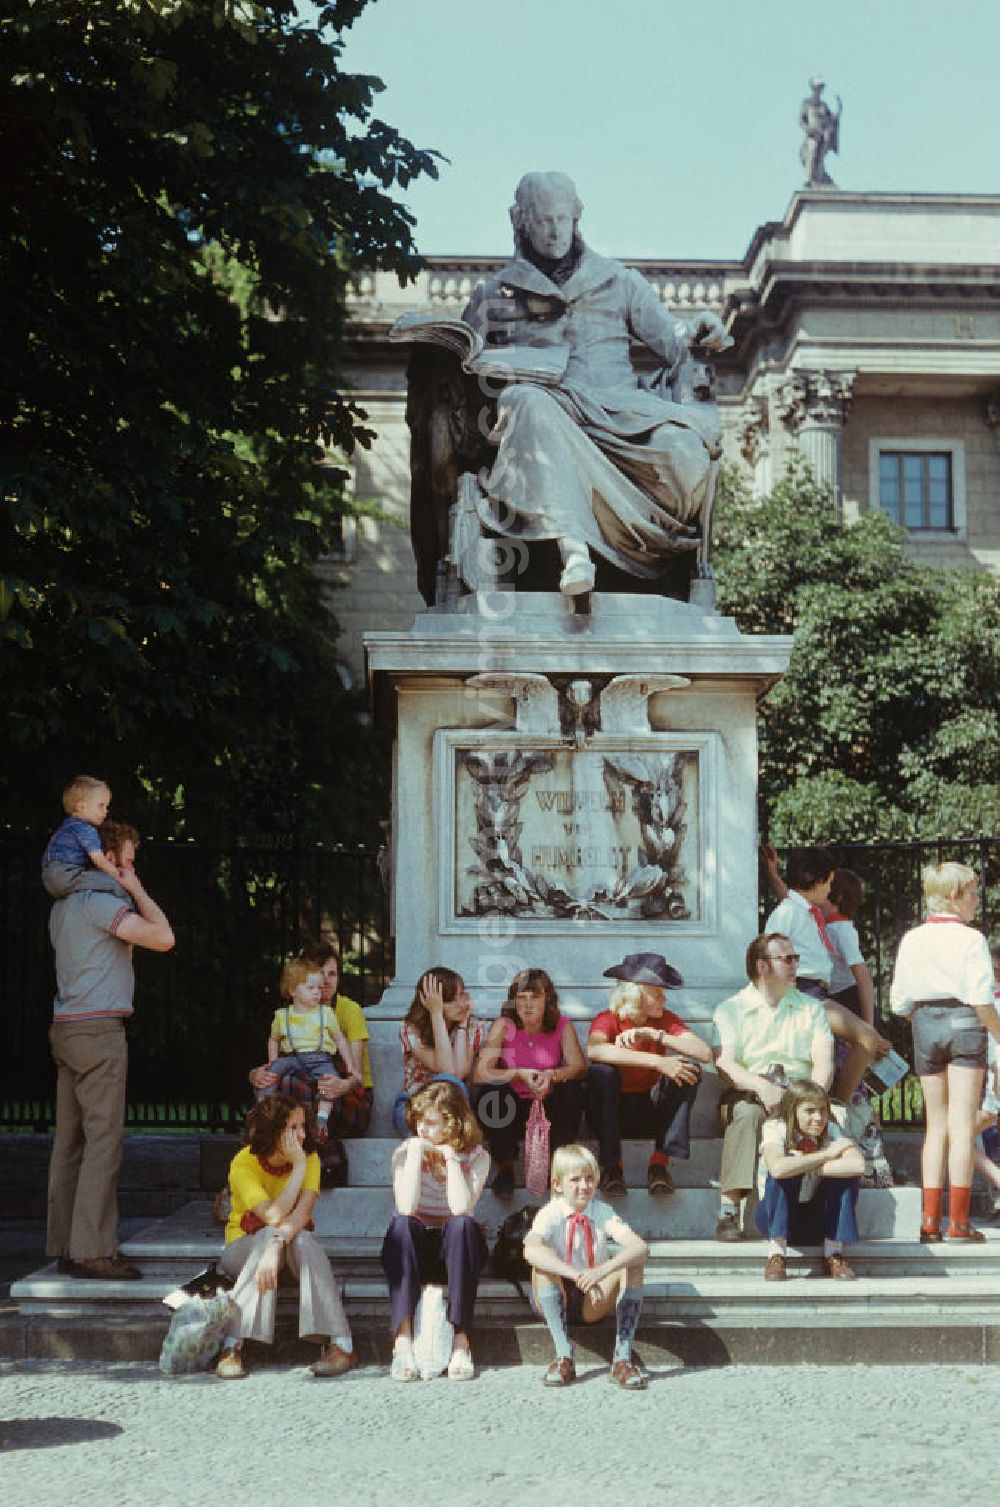 GDR picture archive: Berlin - Junge Pioniere und Touristen sitzen auf den Stufen des Denkmals für Wilhelm von Humboldt, das vor dem Hauptgebäude der Humboldt-Universität Unter den Linden in Berlin steht.